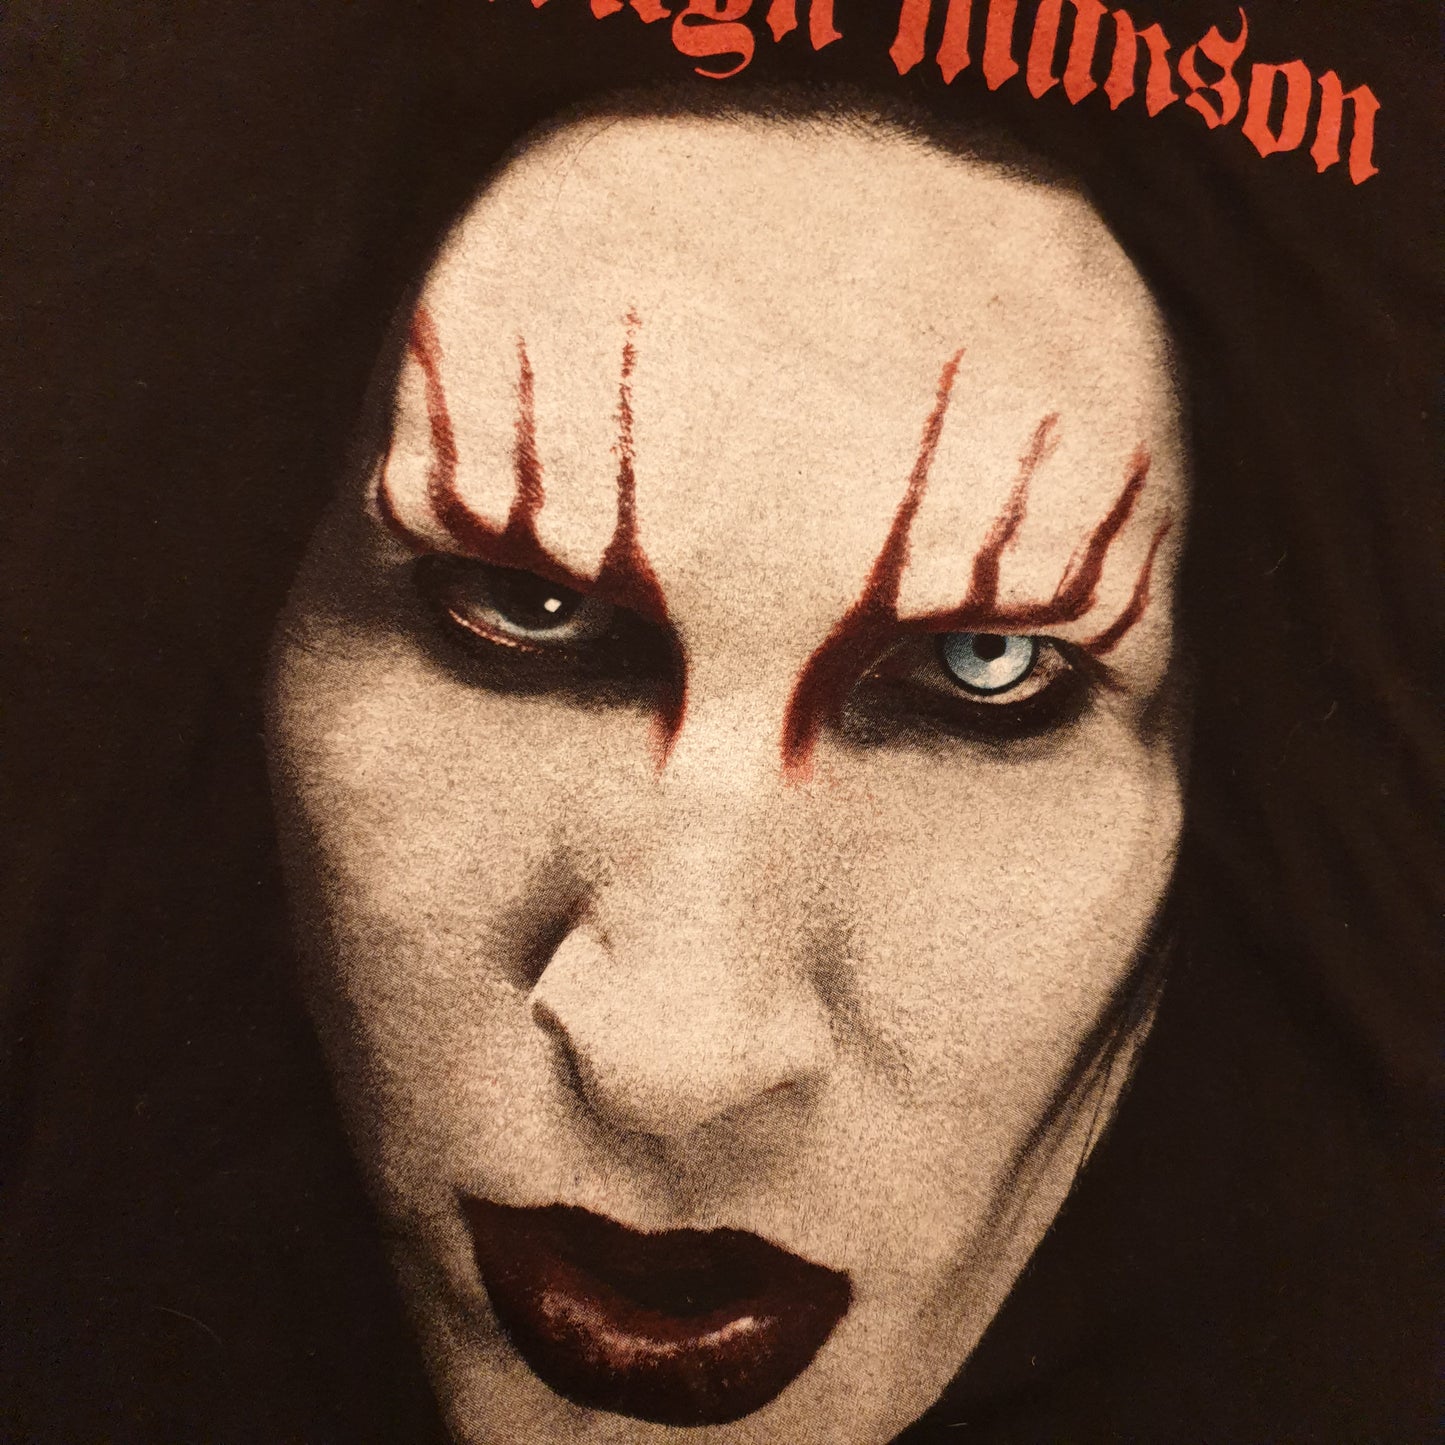 Marilyn Manson T-Shirt XL